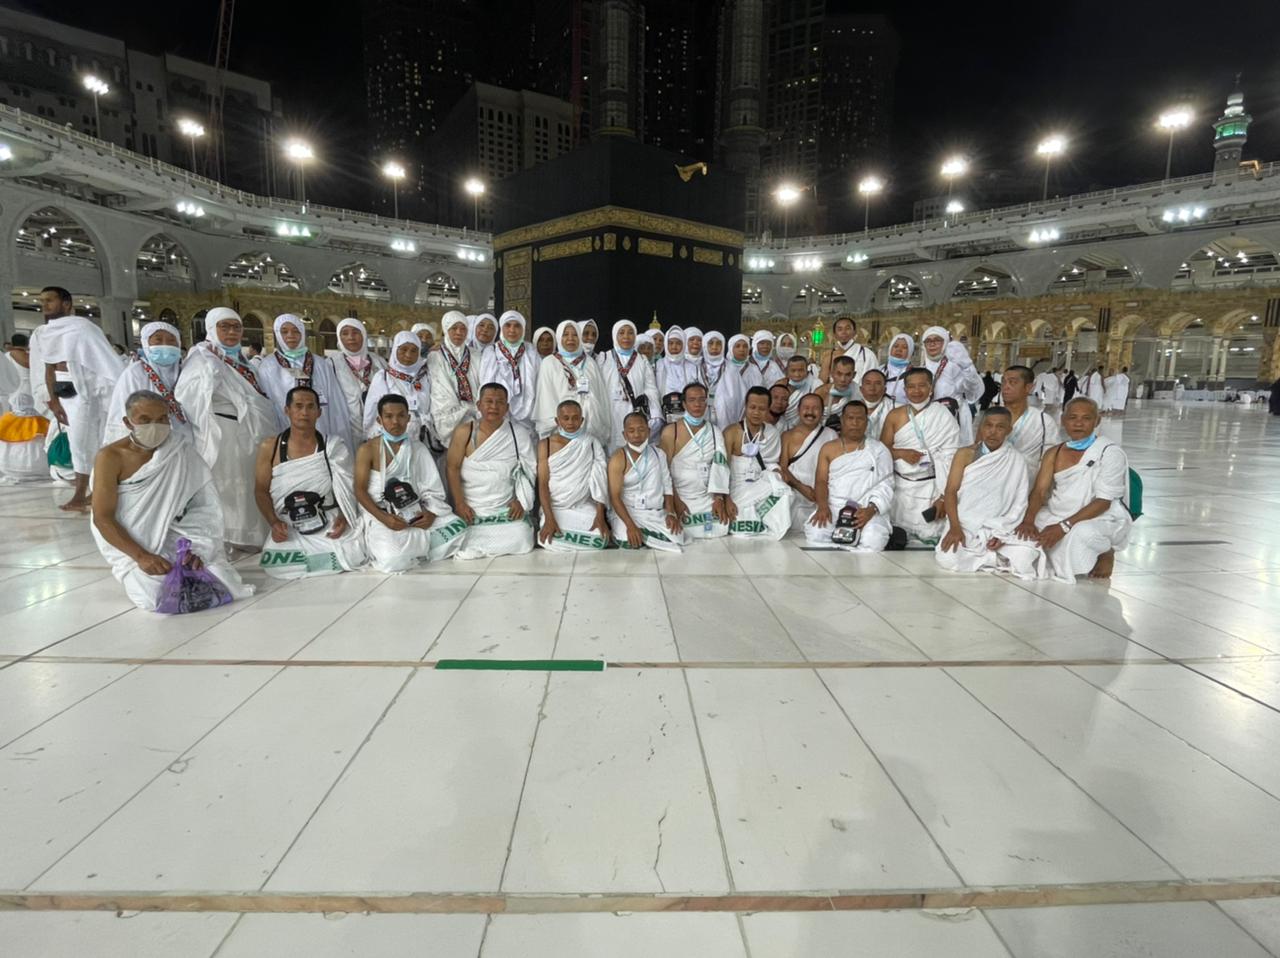 Bergerak ke Mekkah, Jemaah Haji Lambar Disambut Bak Pejabat Negara